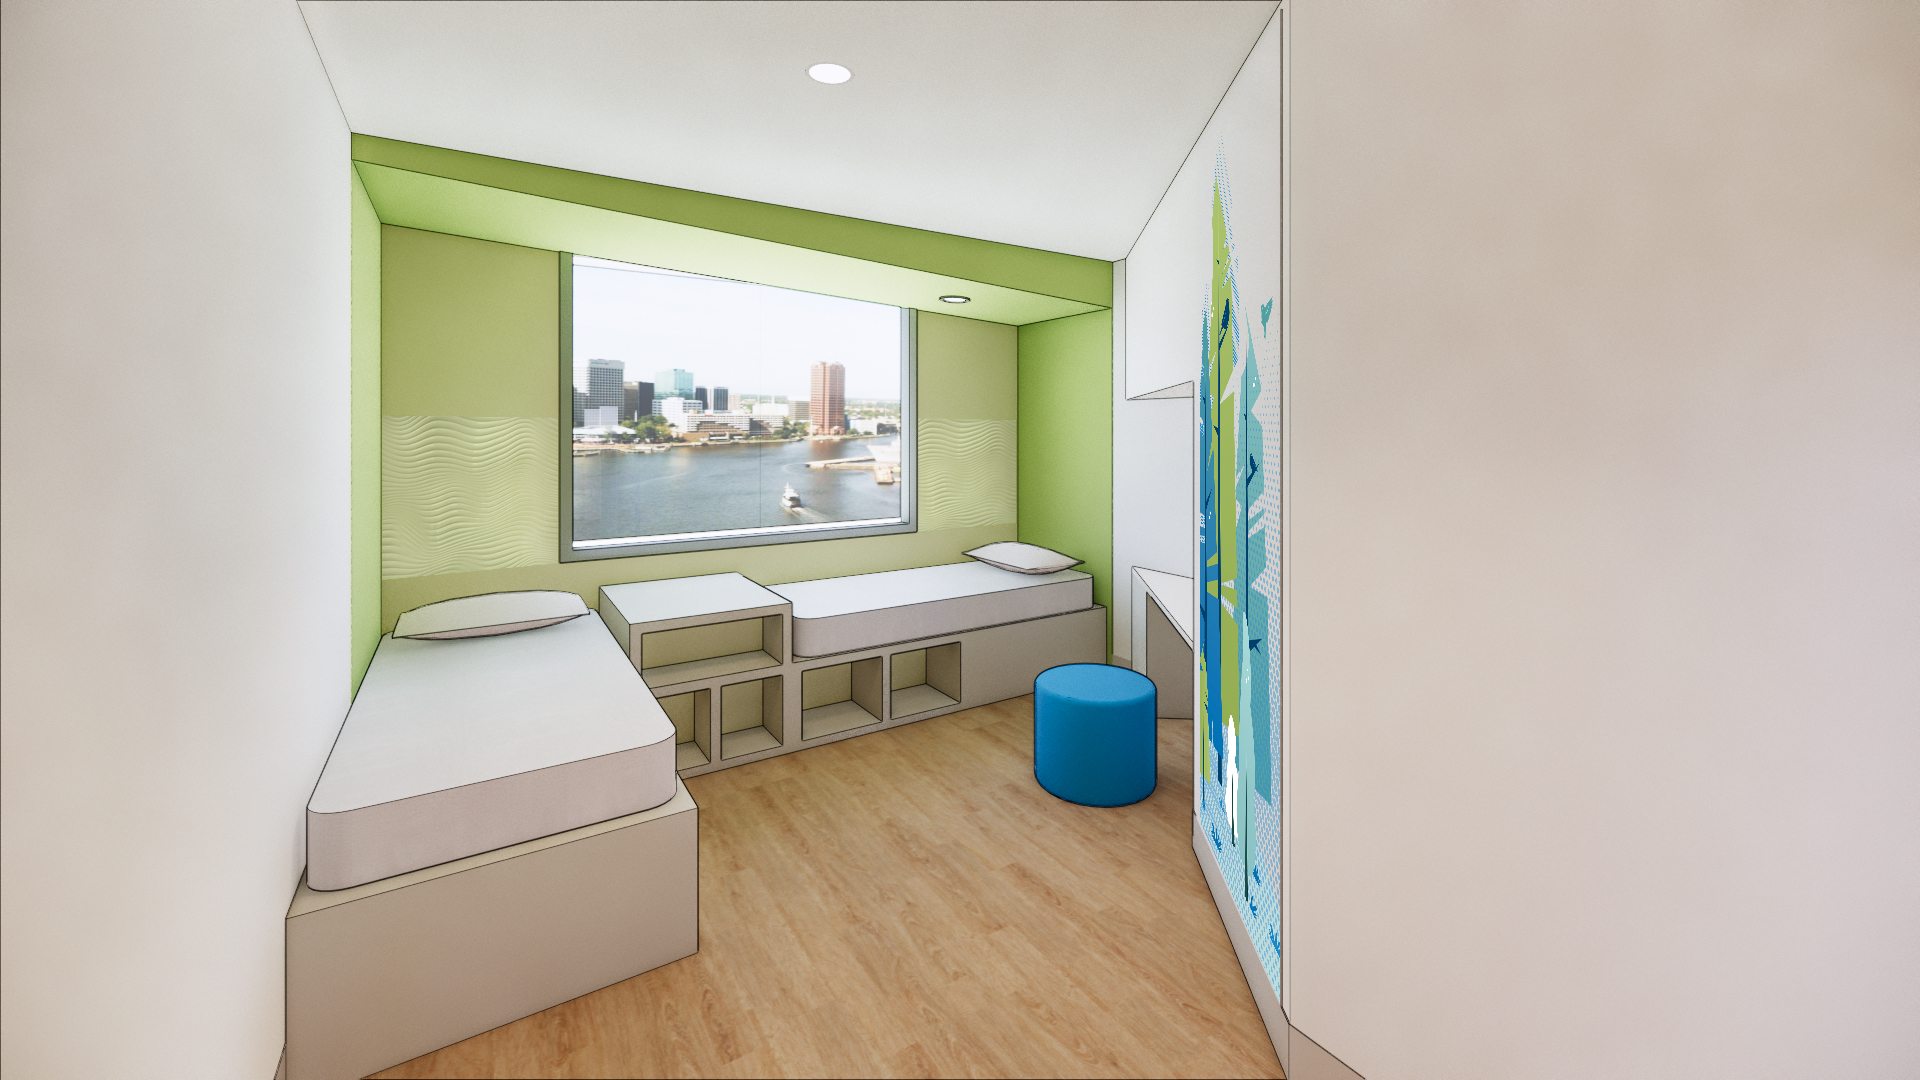 patient room rendering